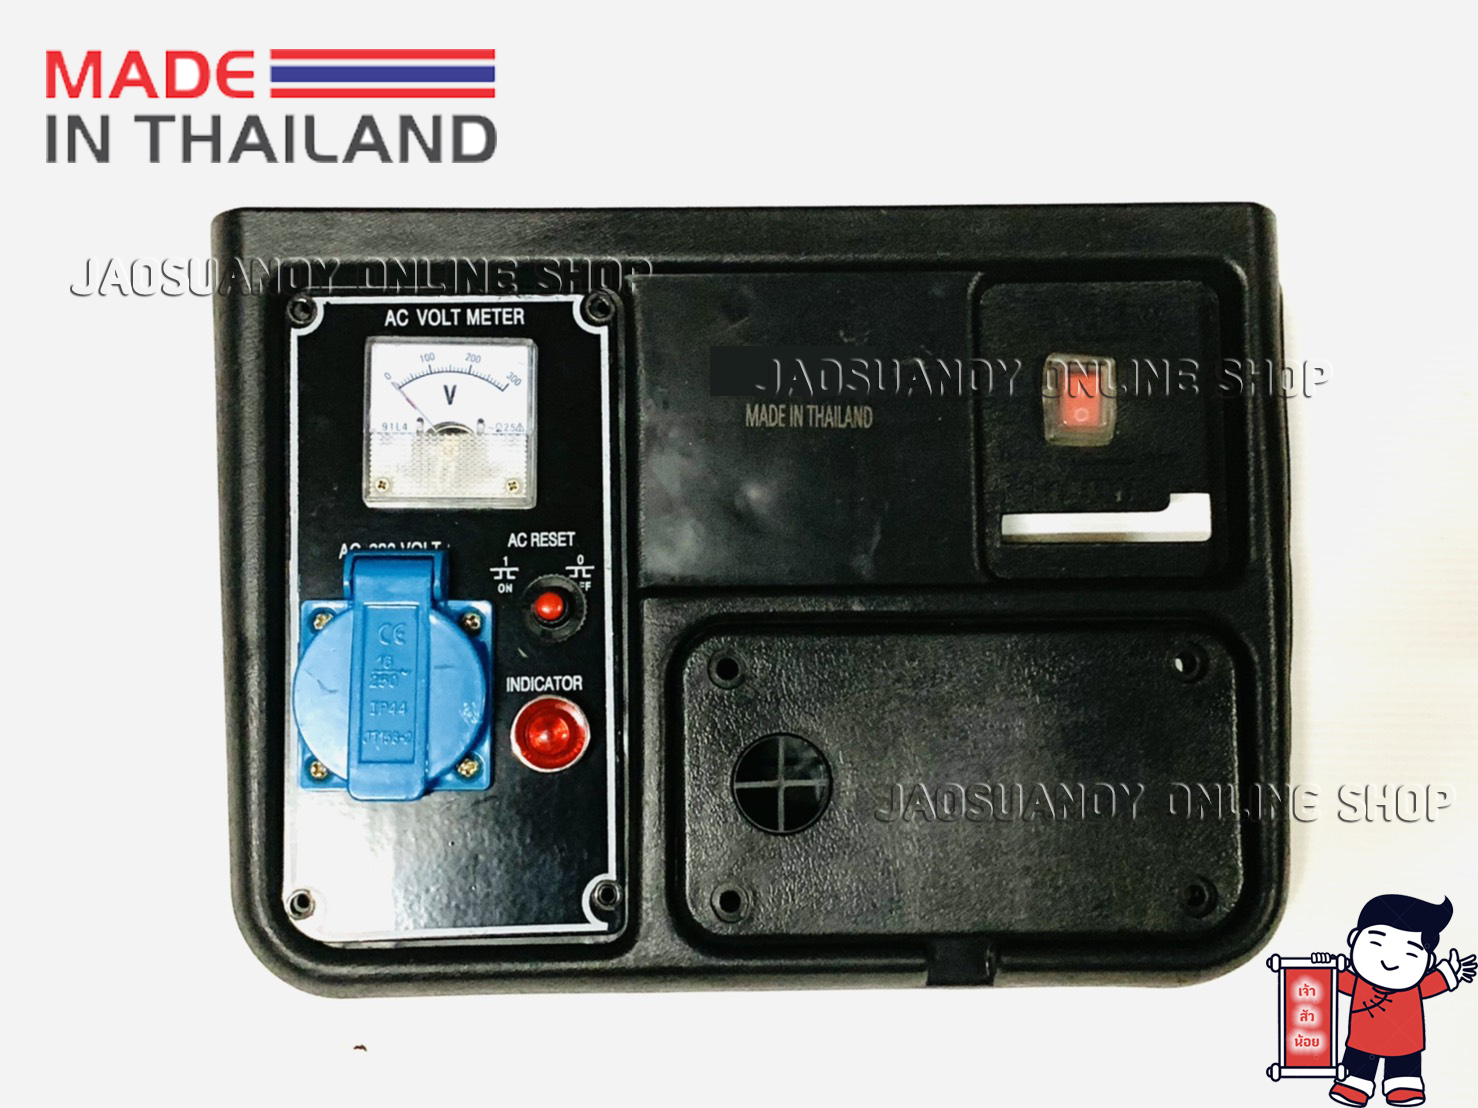 แผงควบคุม แผงหน้าปัด สำหรับเครื่องปั่นไฟเบนซินขนาดเล็ก รุ่น 950----สินค้า MADE IN THAILAND (Code : KM950-40)